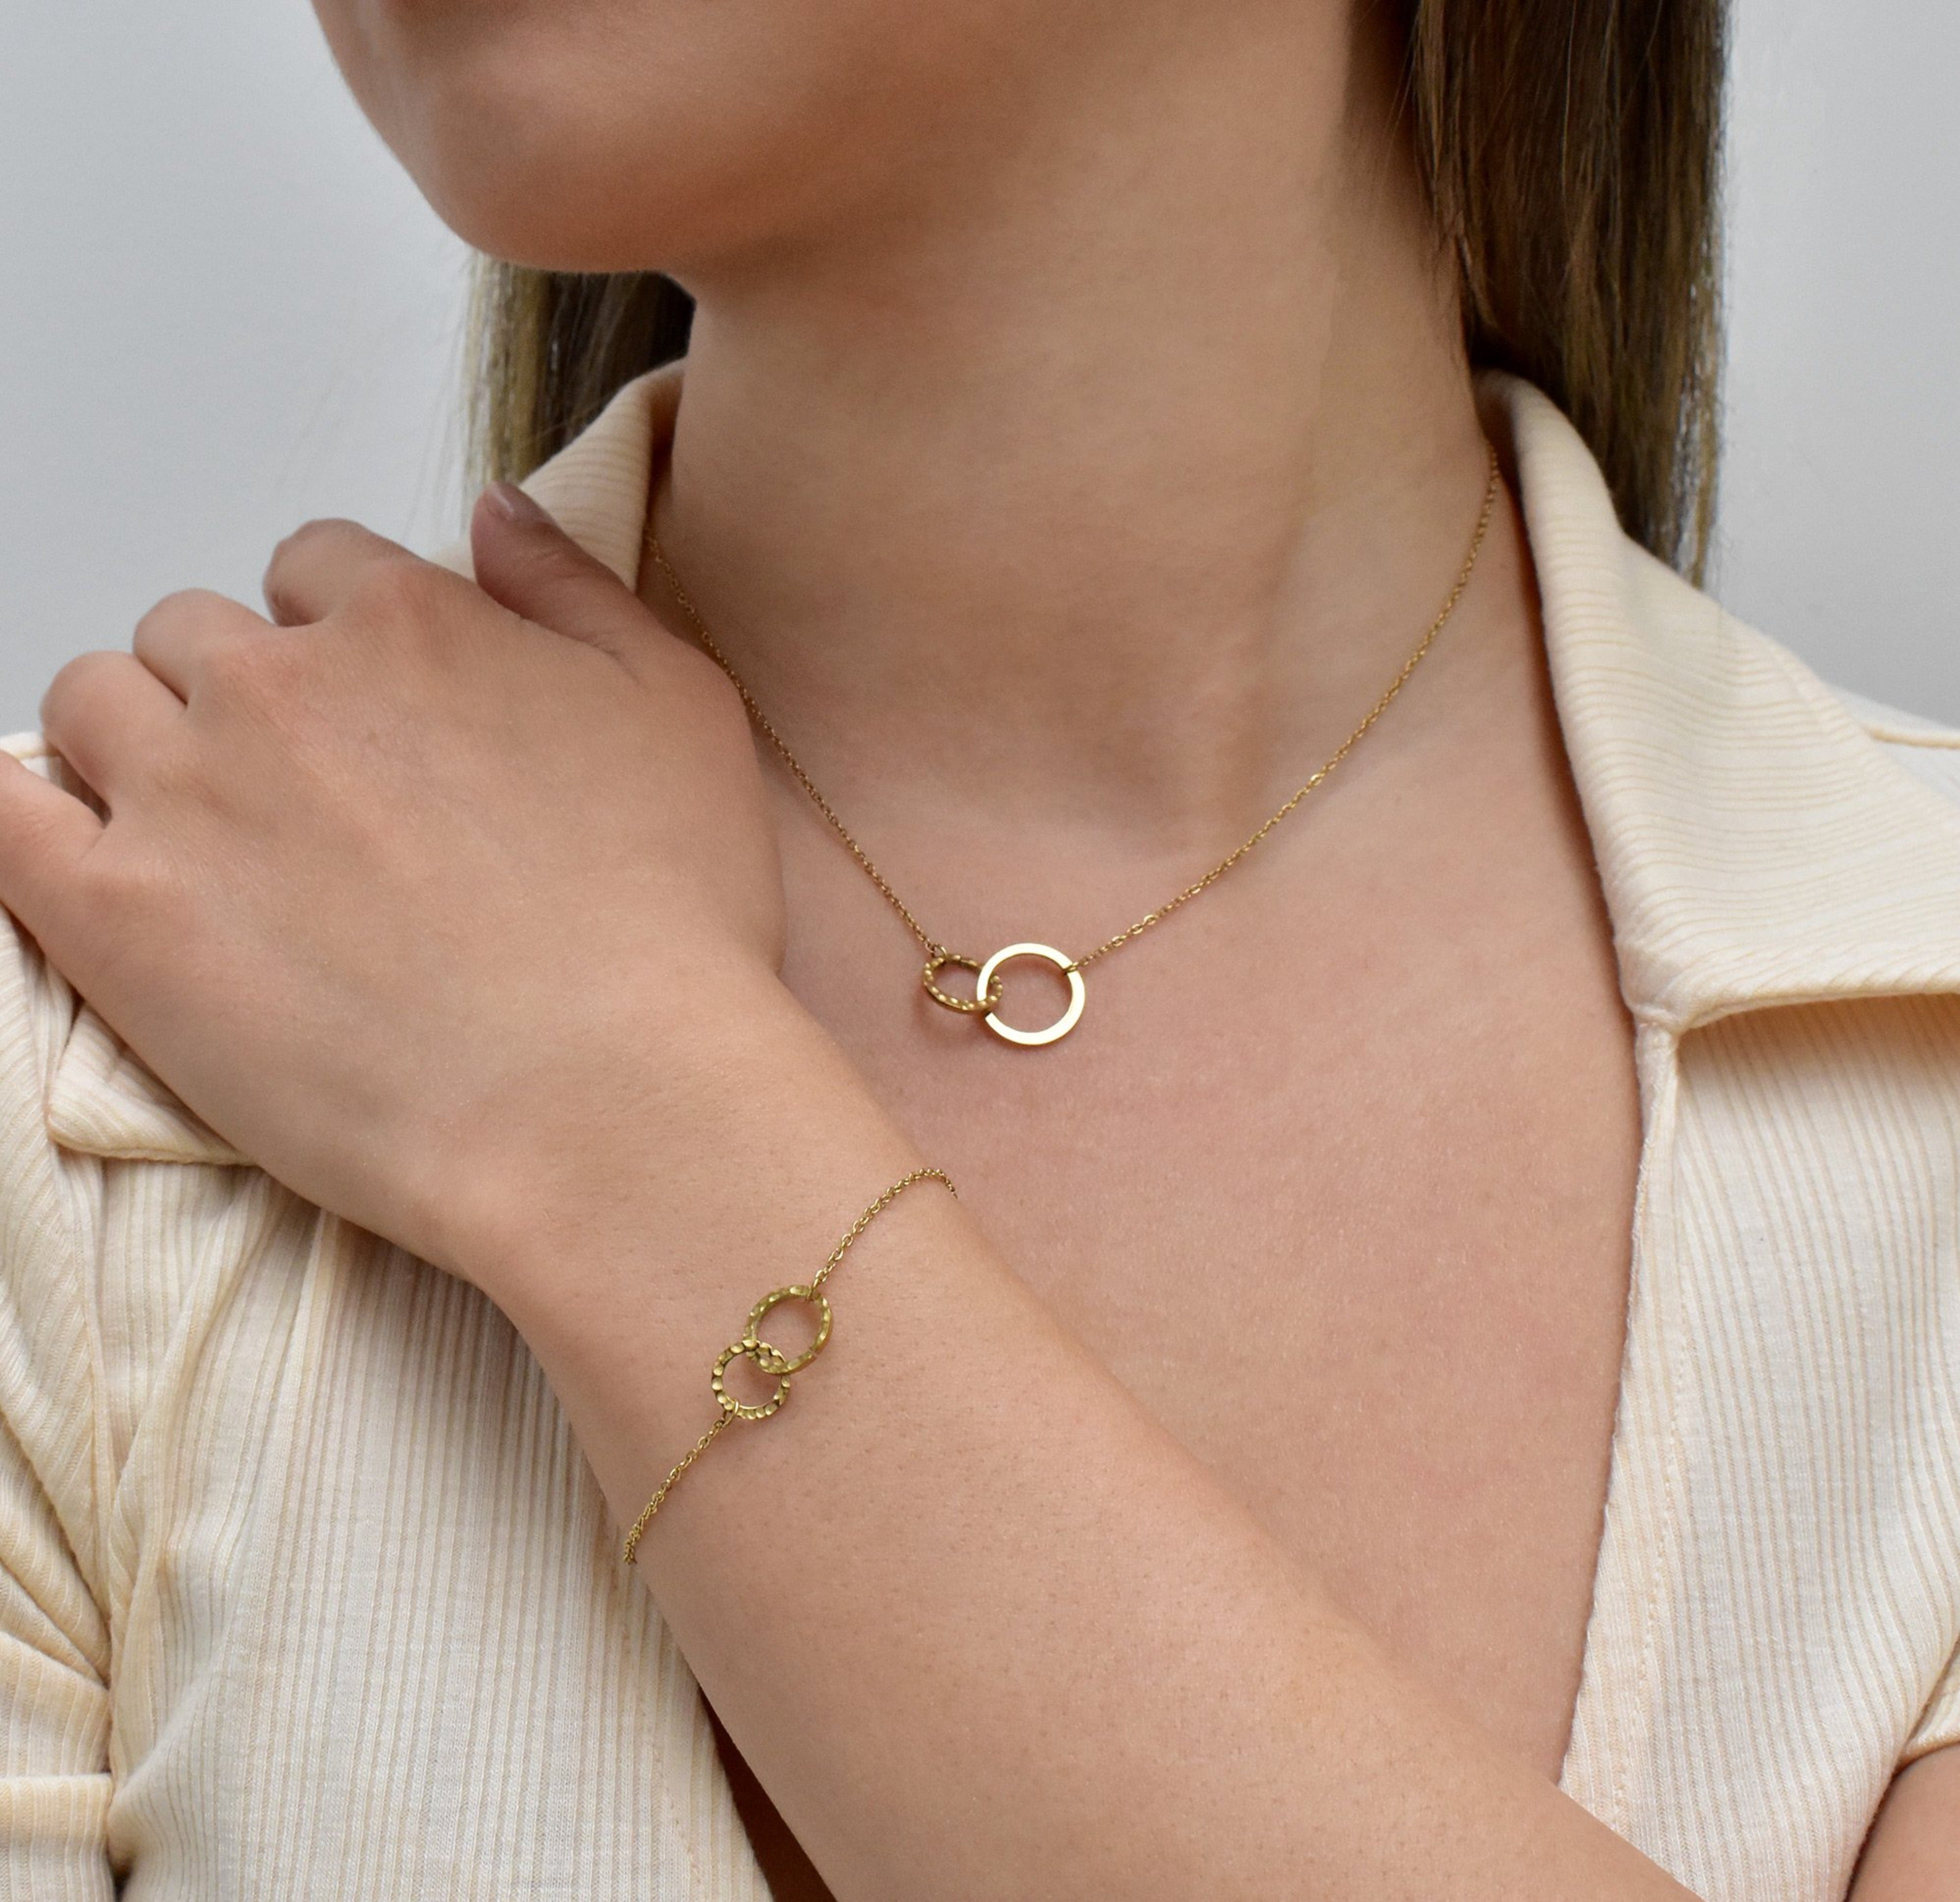 dainty gold unity link bracelet waterproof jewelry tarnish free worn on model